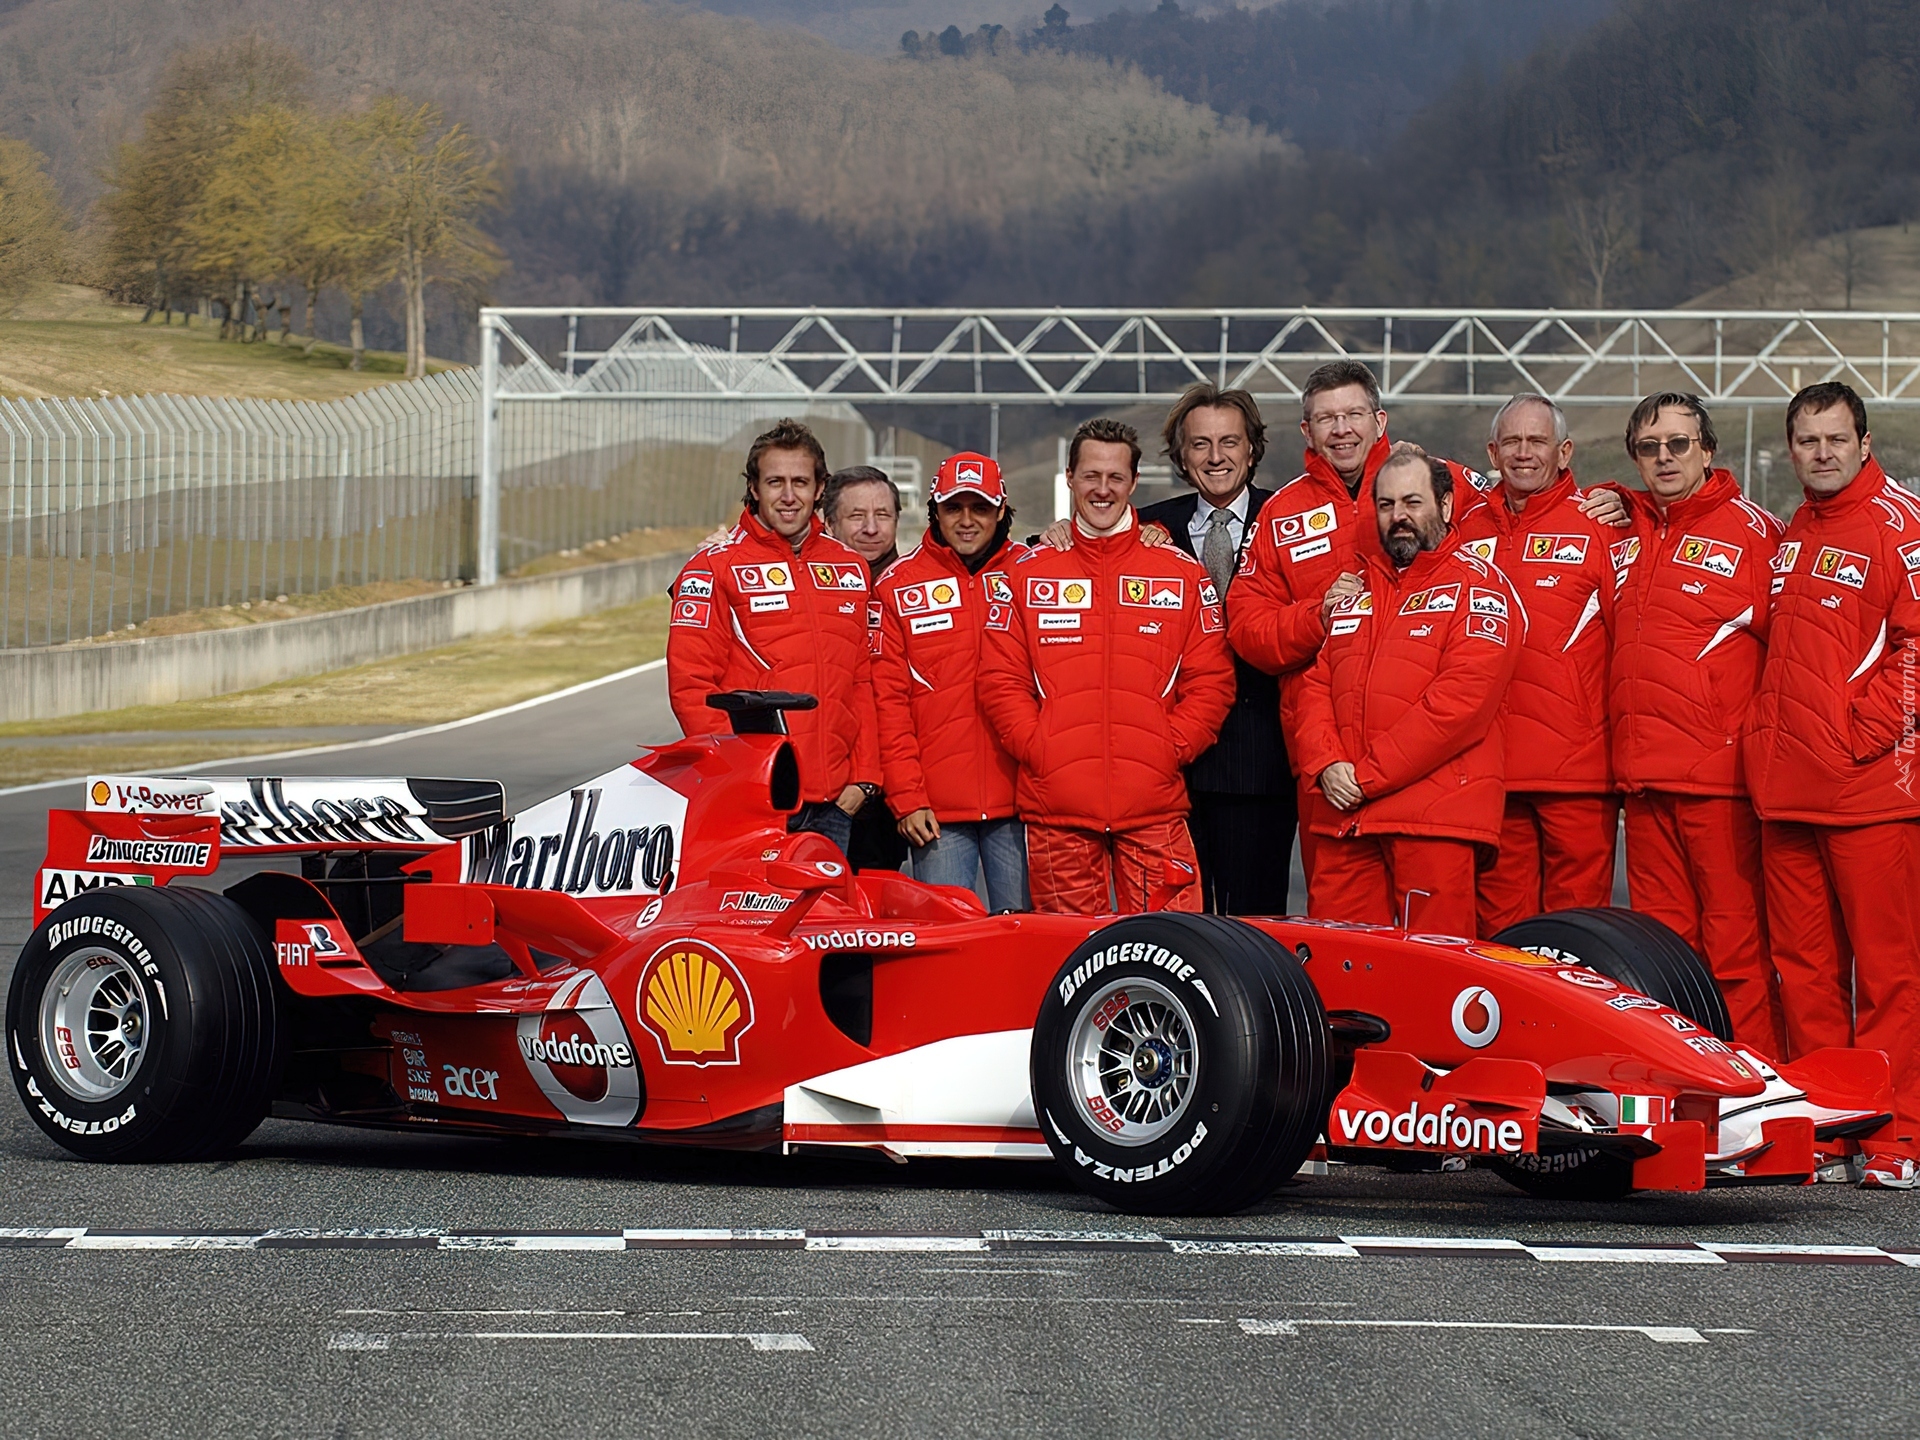 Команда формулы 1 8. Команда Феррари ф1. Ferrari 248 f1. Scuderia Ferrari f1 Team. Болид Феррари 2006.